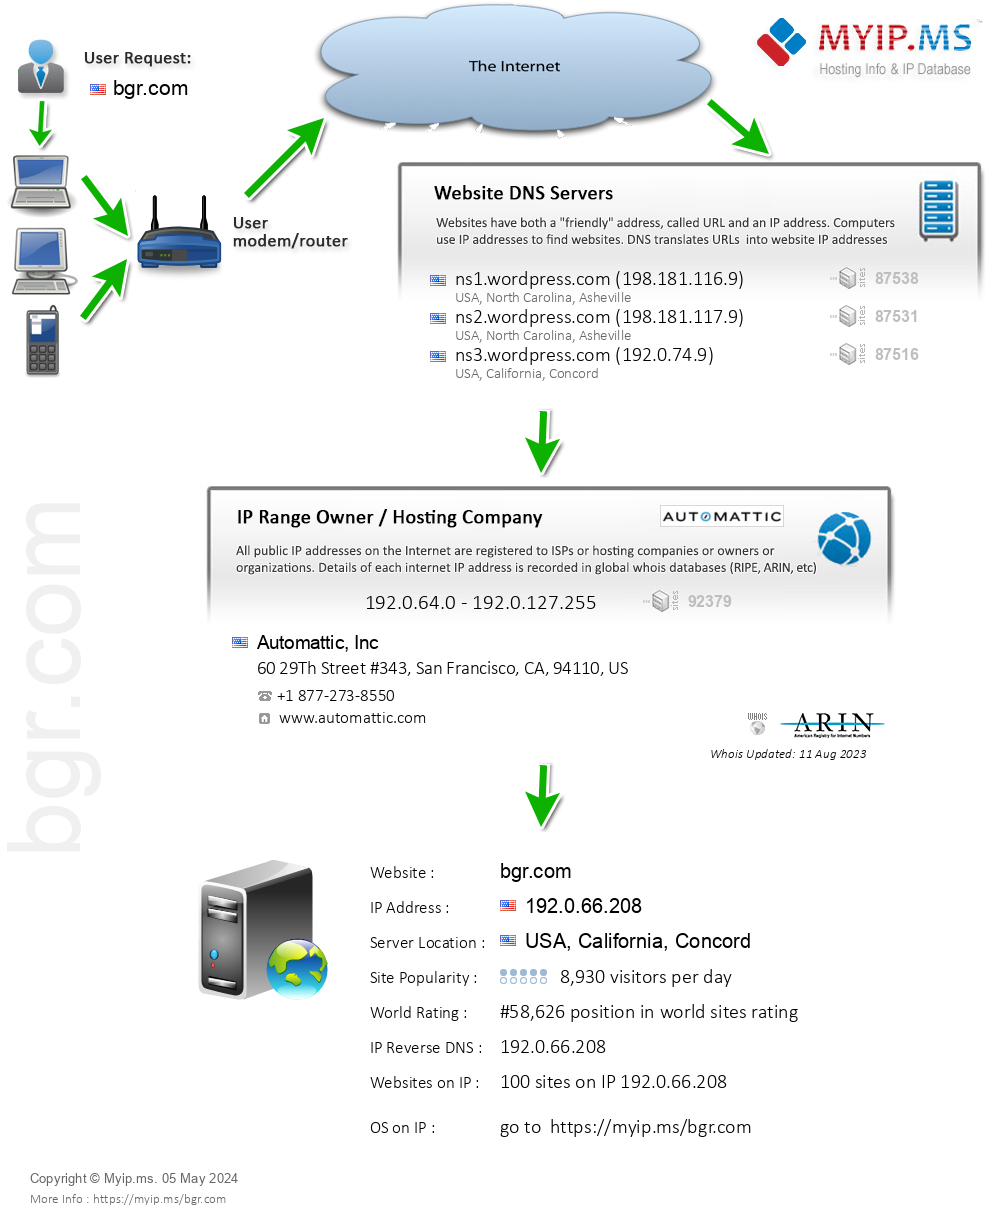 Bgr.com - Website Hosting Visual IP Diagram